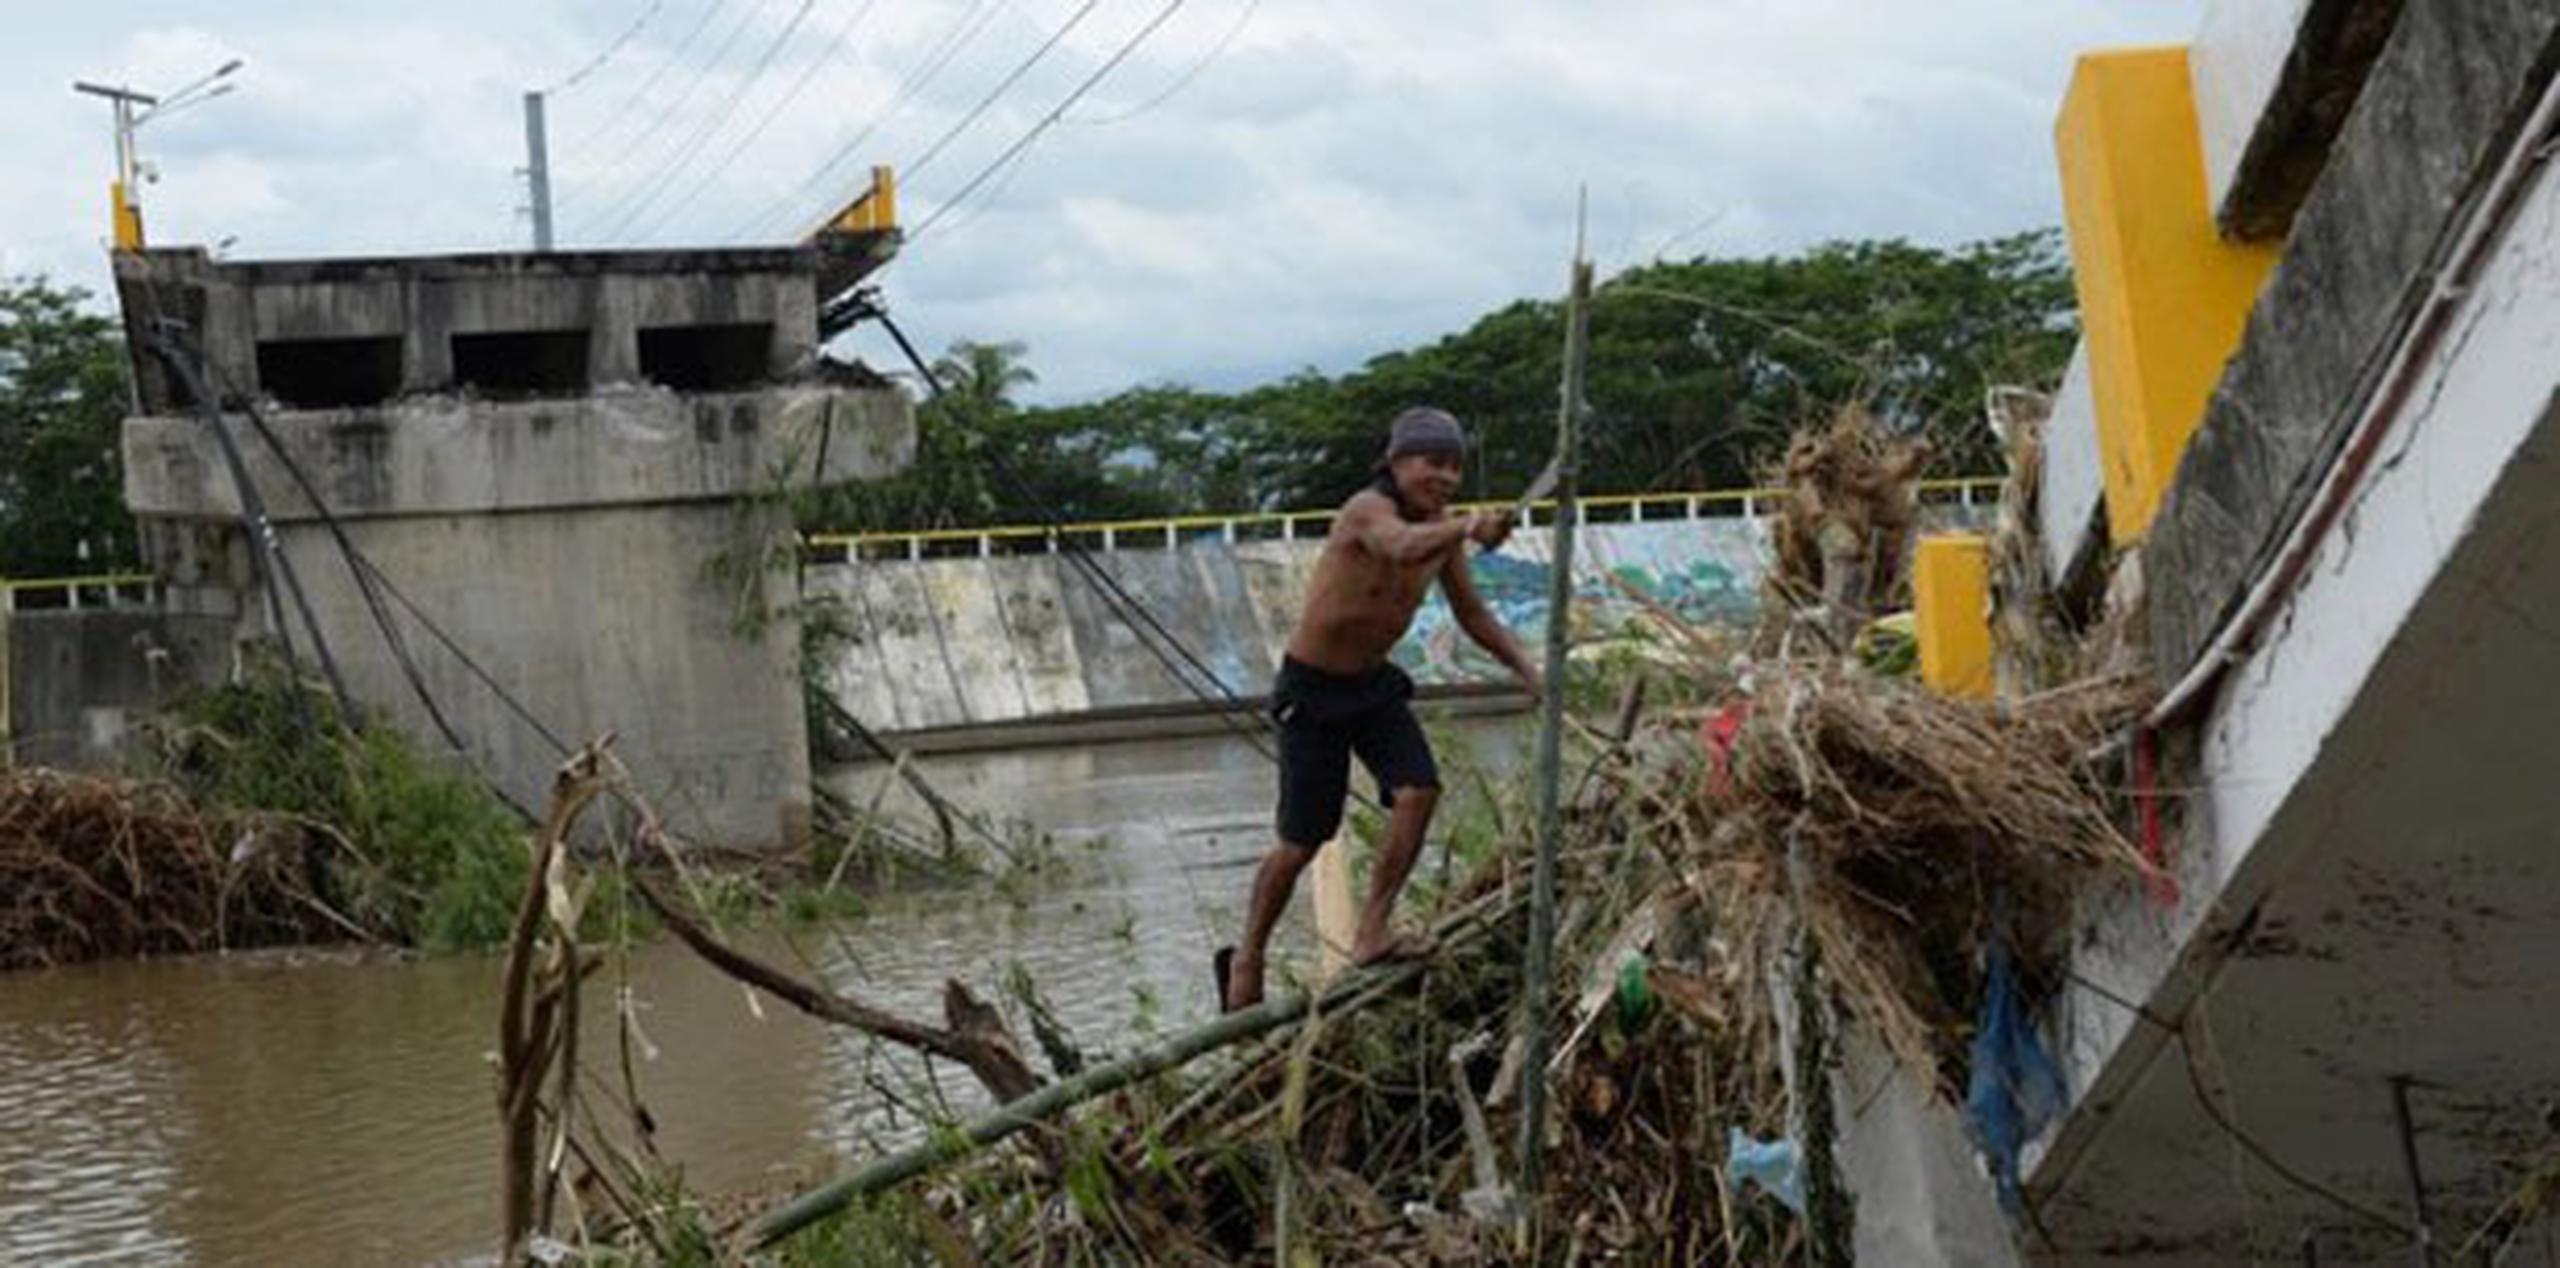 Del millón de personas afectadas por el tifón, más de la mitad acudió a los refugios de emergencia. (AFP PHOTO/TED ALJIBE)